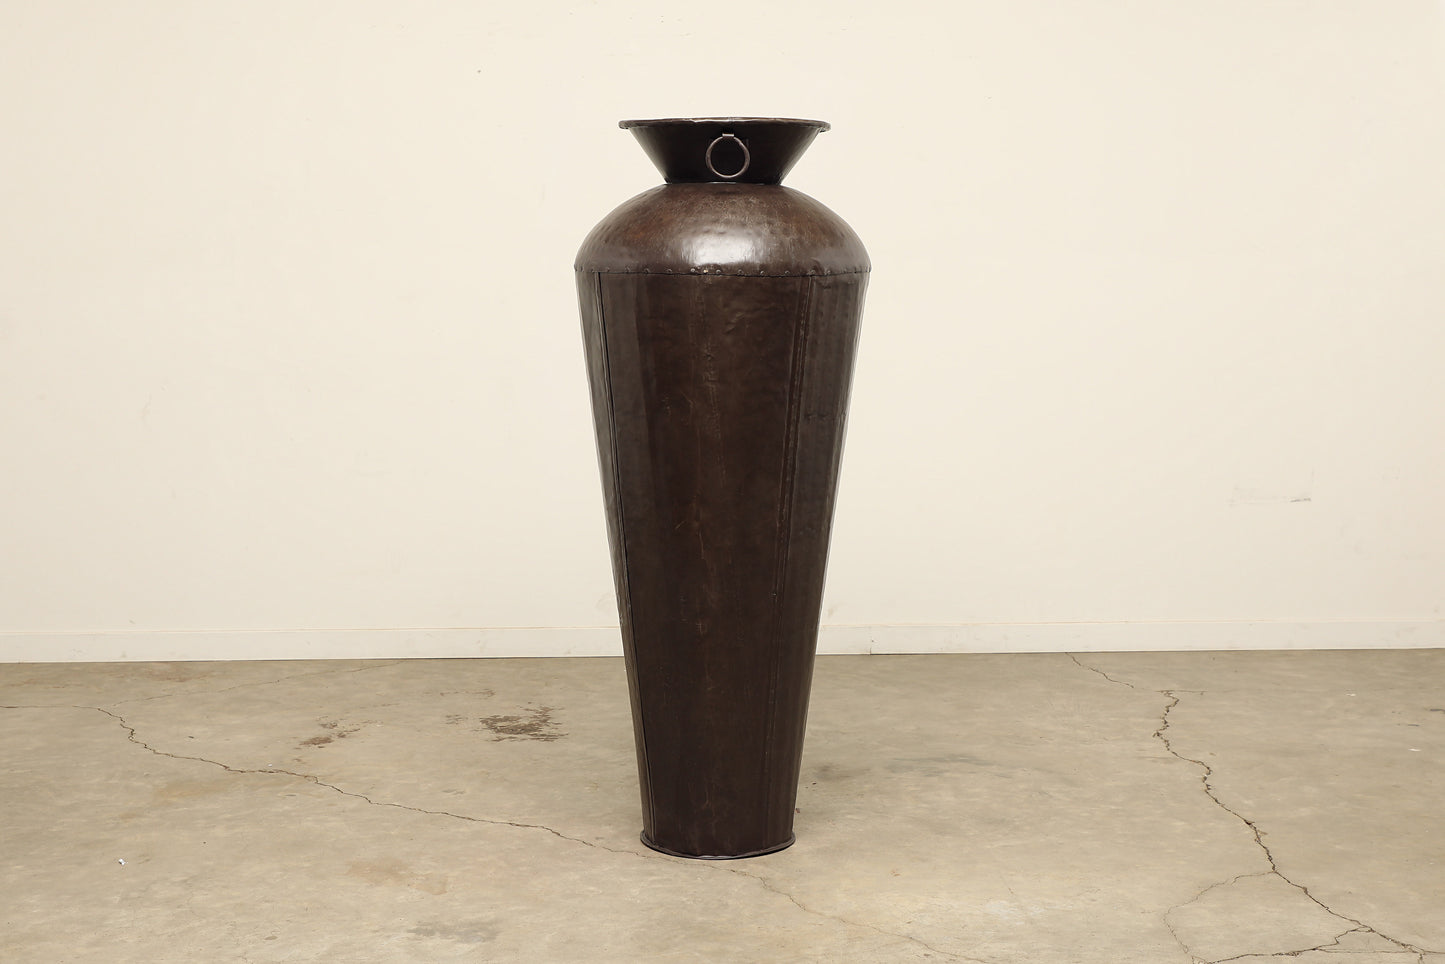 (PP023) Iron Garden Pot - Large (24x24x60)